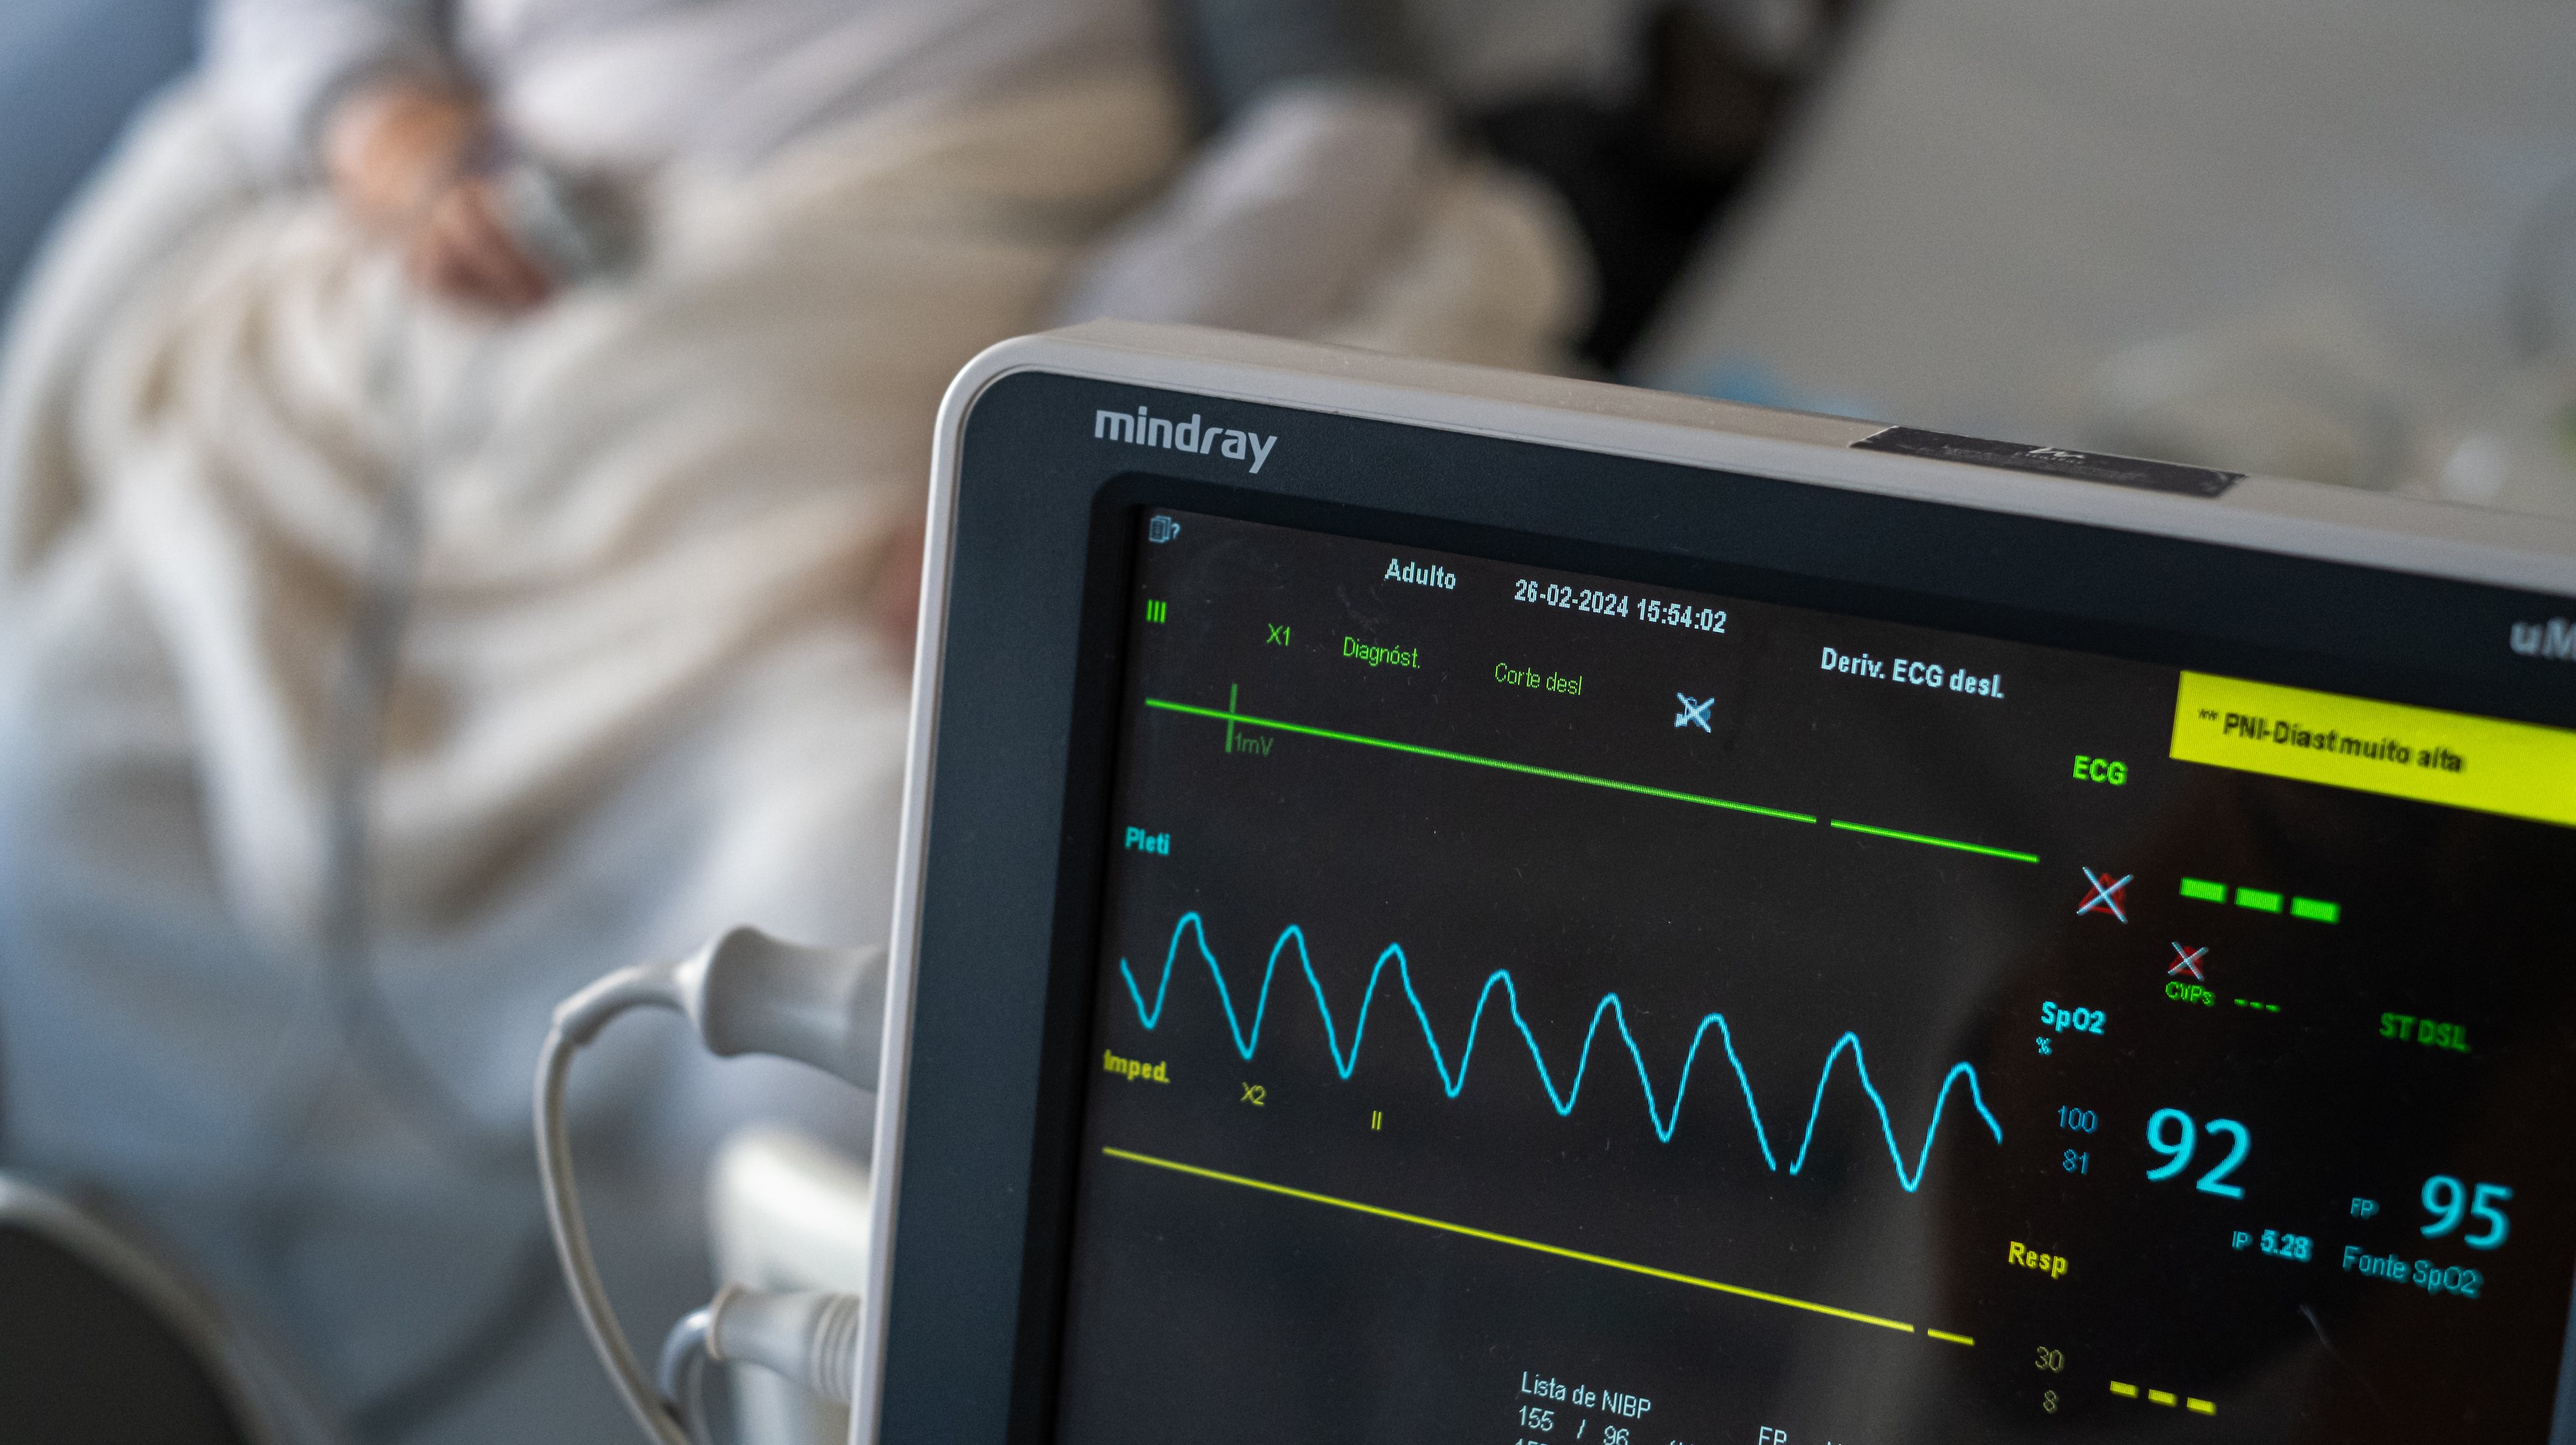 O Hospital do Divino Espírito Santo (HDES), em Ponta Delgada, utiliza as ferramentas HeartLogic e Heart Connect System, desenvolvidas pela Boston Scientific, para acompanhar à distância doentes com insuficiência cardíaca e portadores de dispositivos cardíacos implantáveis.